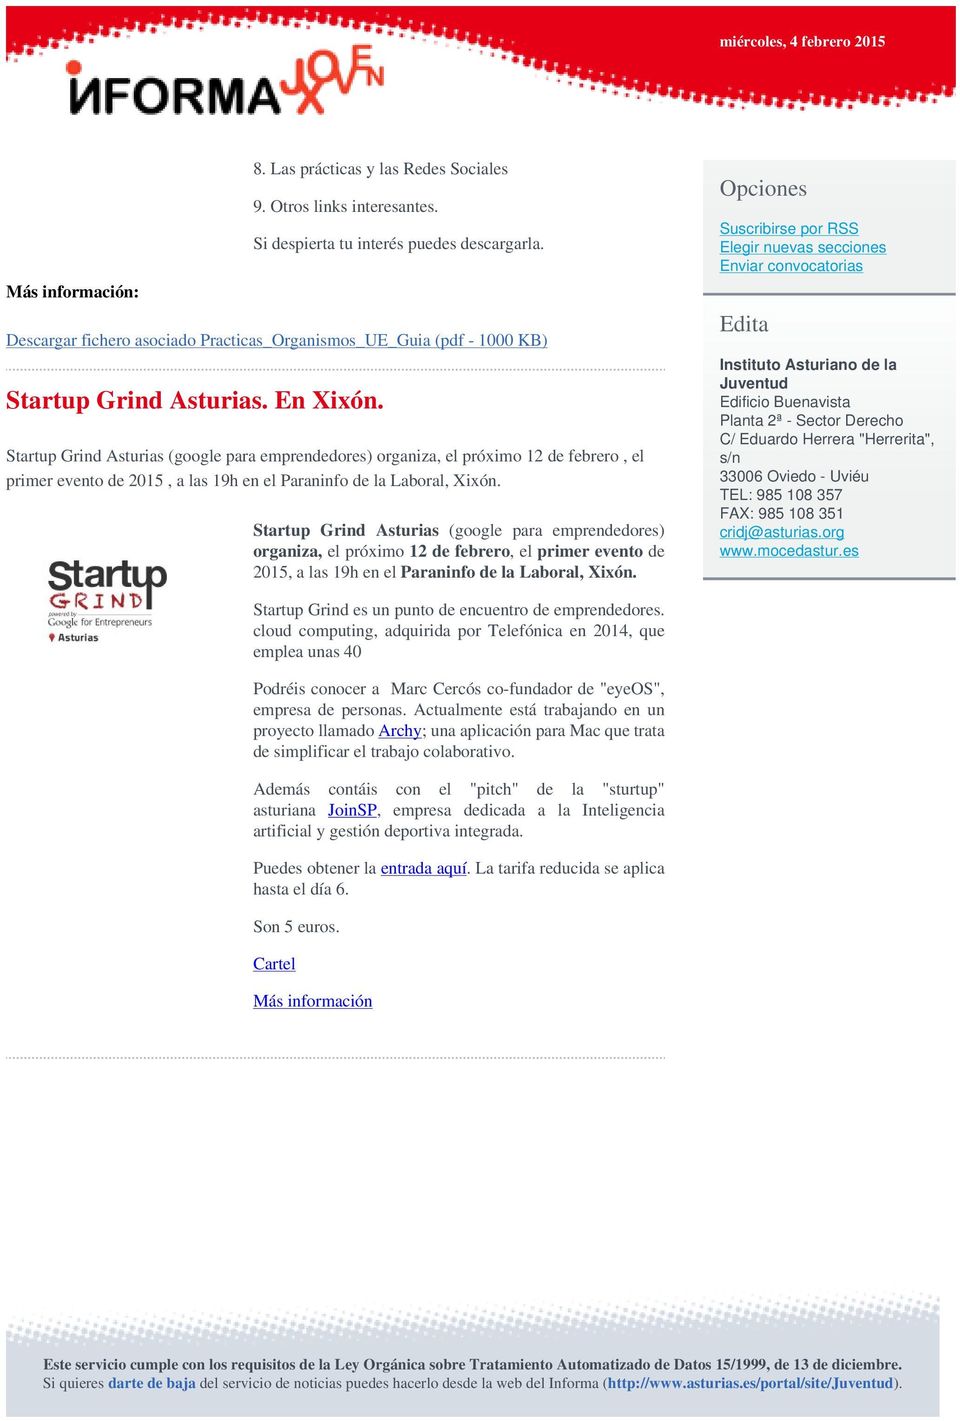 Startup Grind Asturias (google para emprendedores) organiza, el próximo 12 de febrero, el primer evento de 2015, a las 19h en el Paraninfo de la Laboral, Xixón.